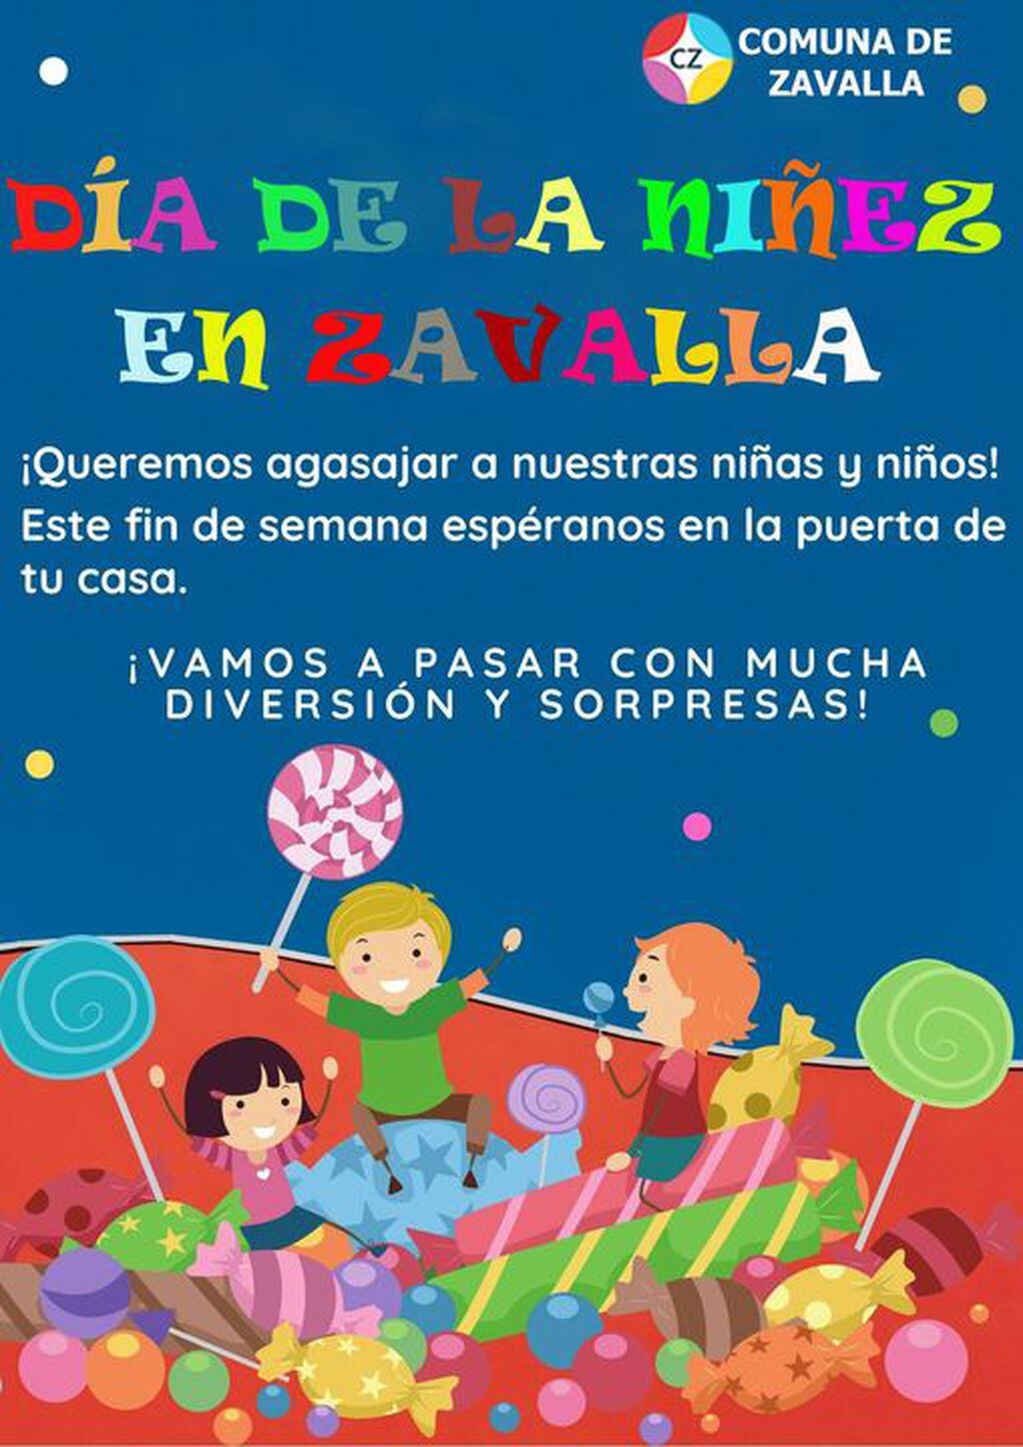 Zavalla festeja el Día de la Niñez pasando por tu casa (Facebook Comuna de Zavalla)